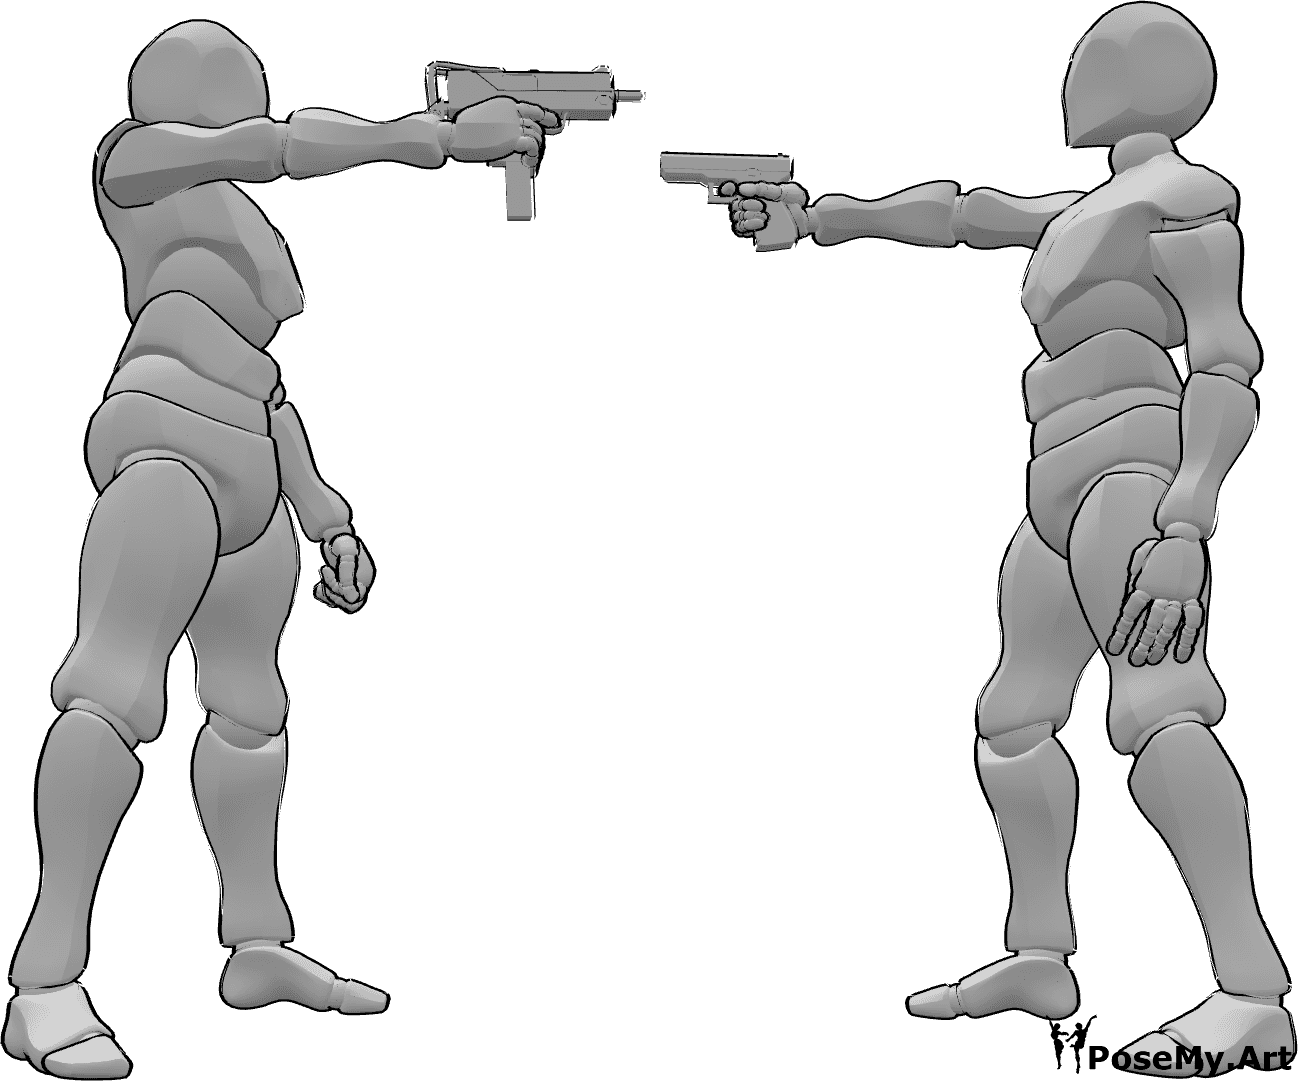 Riferimento alle pose- Uomini che puntano le armi in posa - Due uomini puntano le pistole l'uno contro l'altro